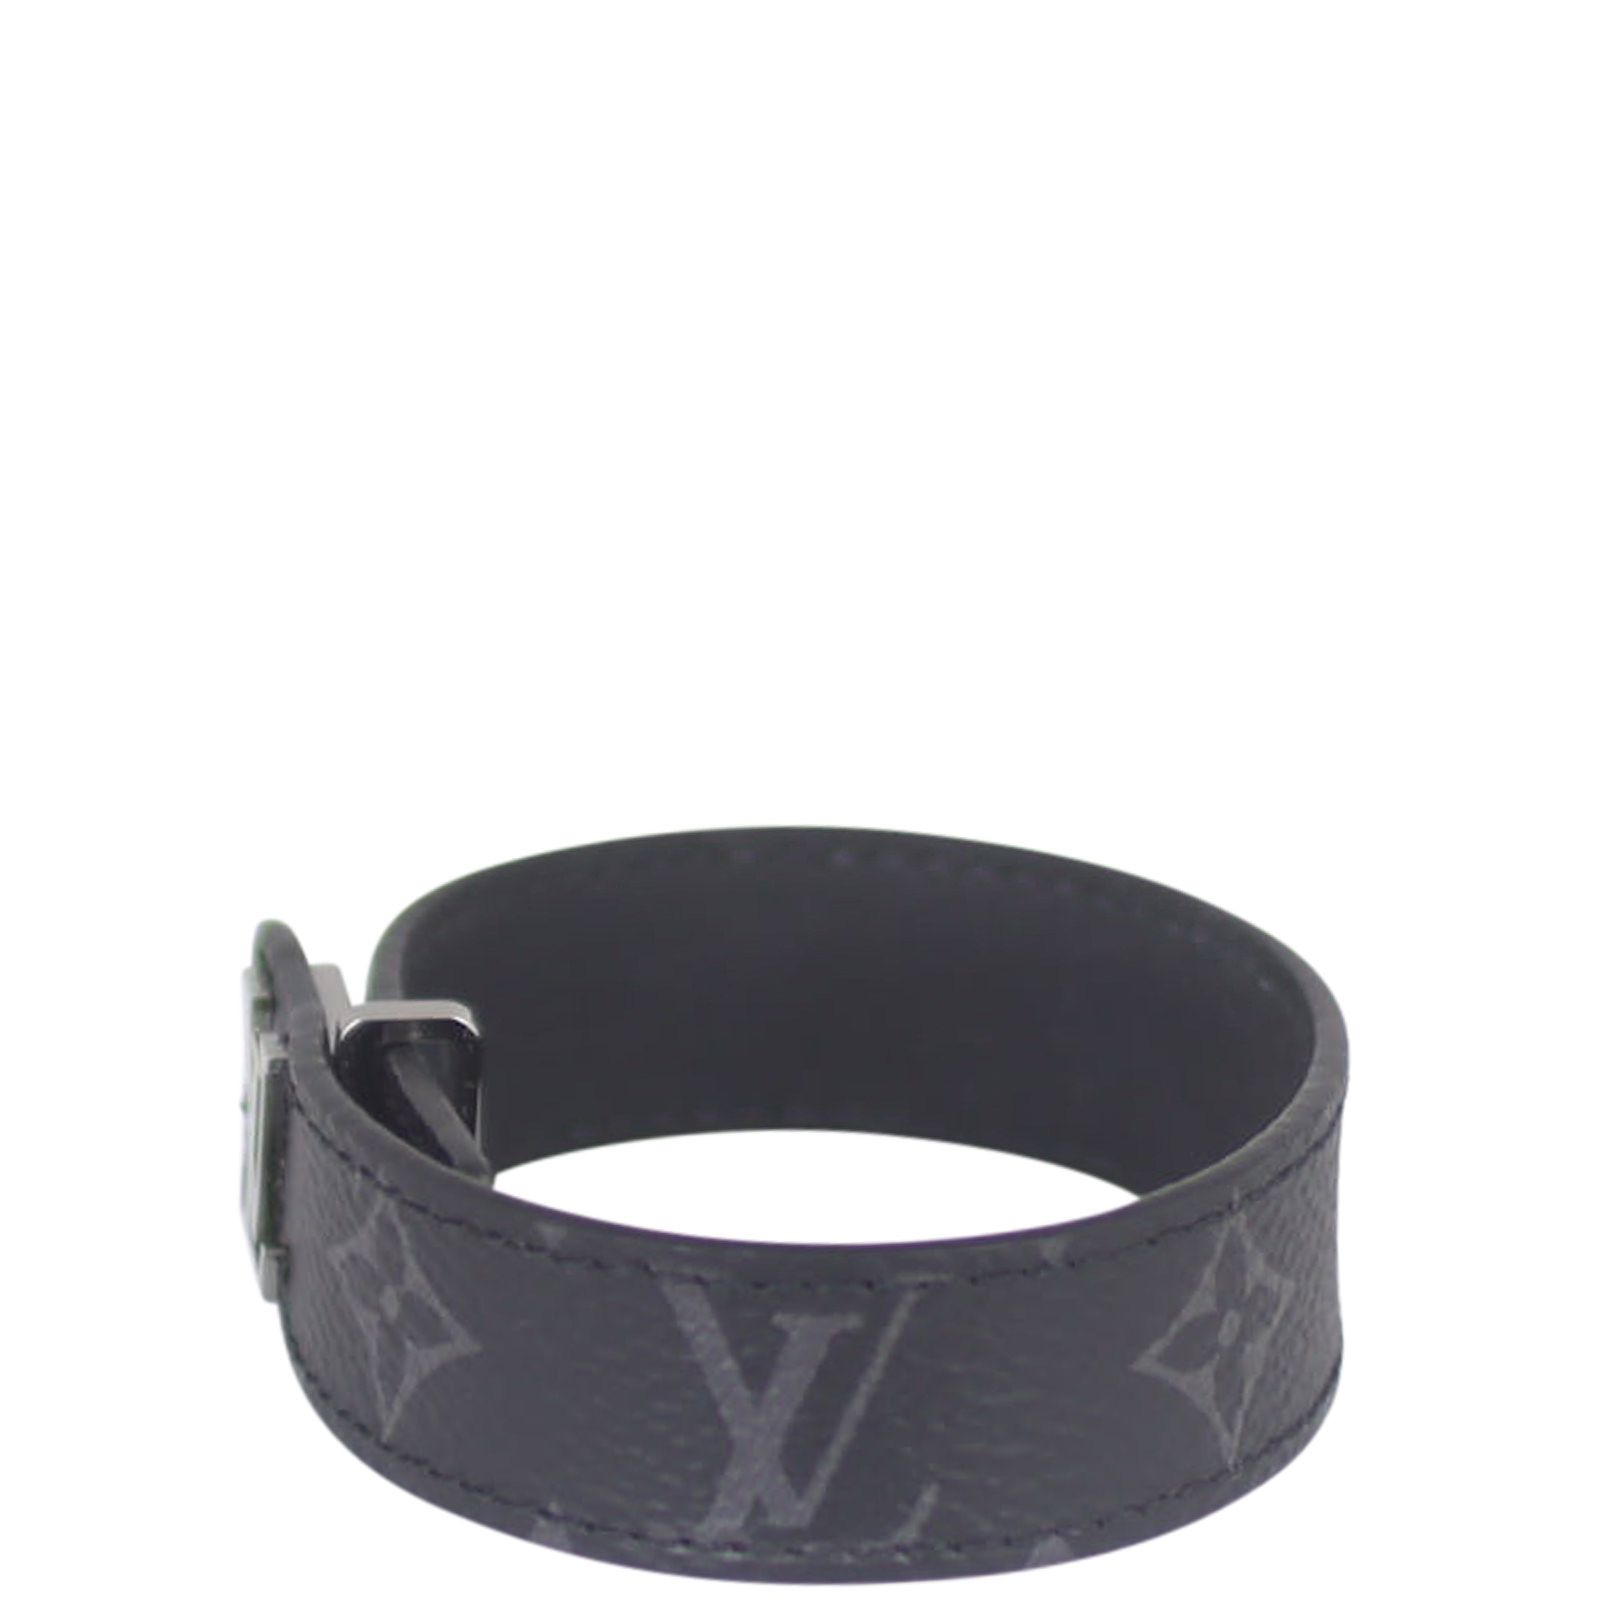 LOUIS VUITTON Monogram Eclipse LV Slim Bracelet 21 575933